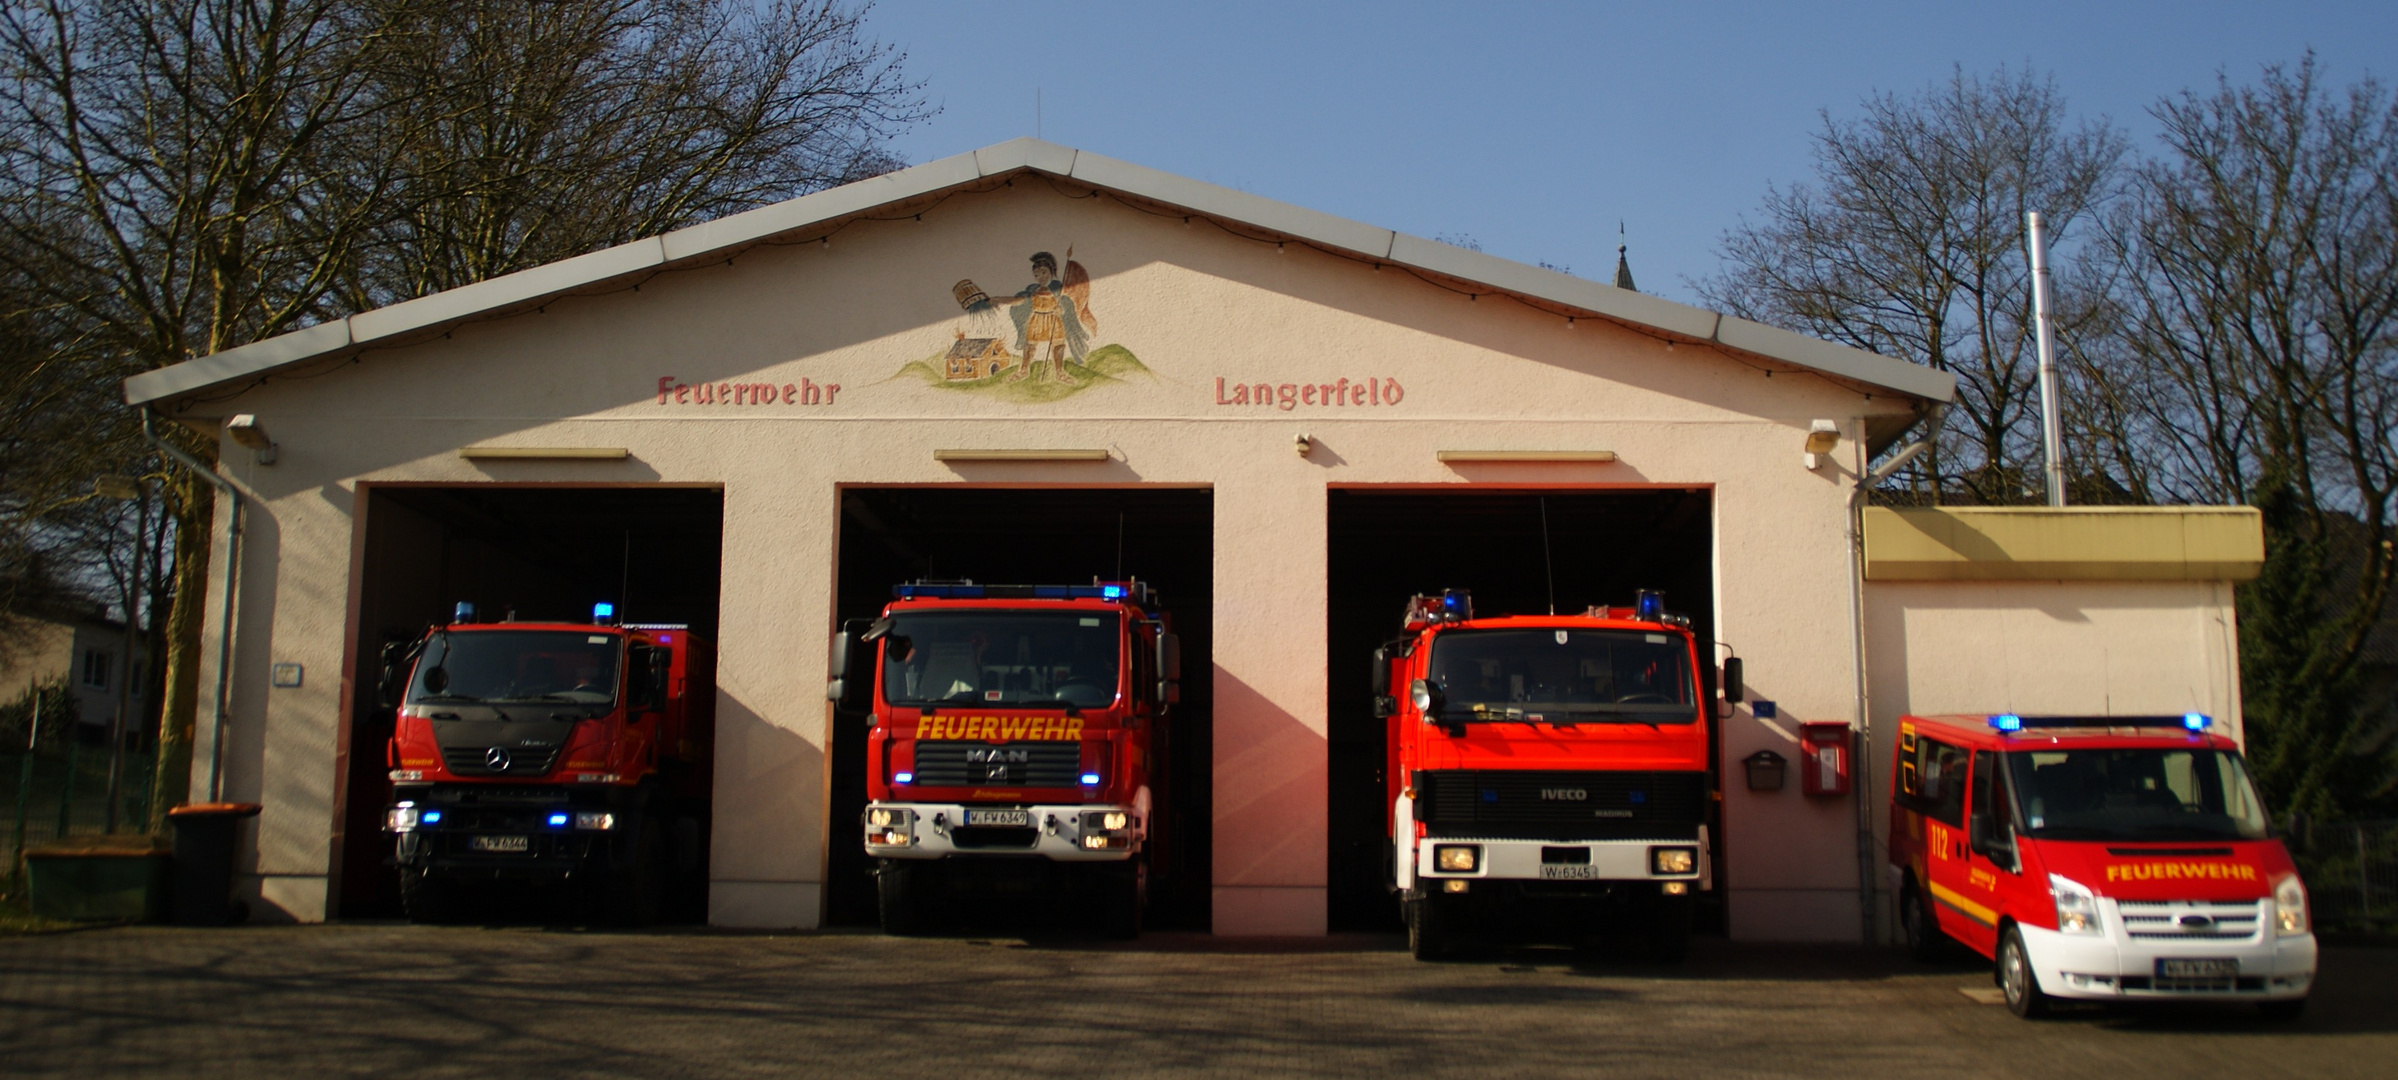 Feuerwehr Wuppertal - Löscheinheit Langerfeld